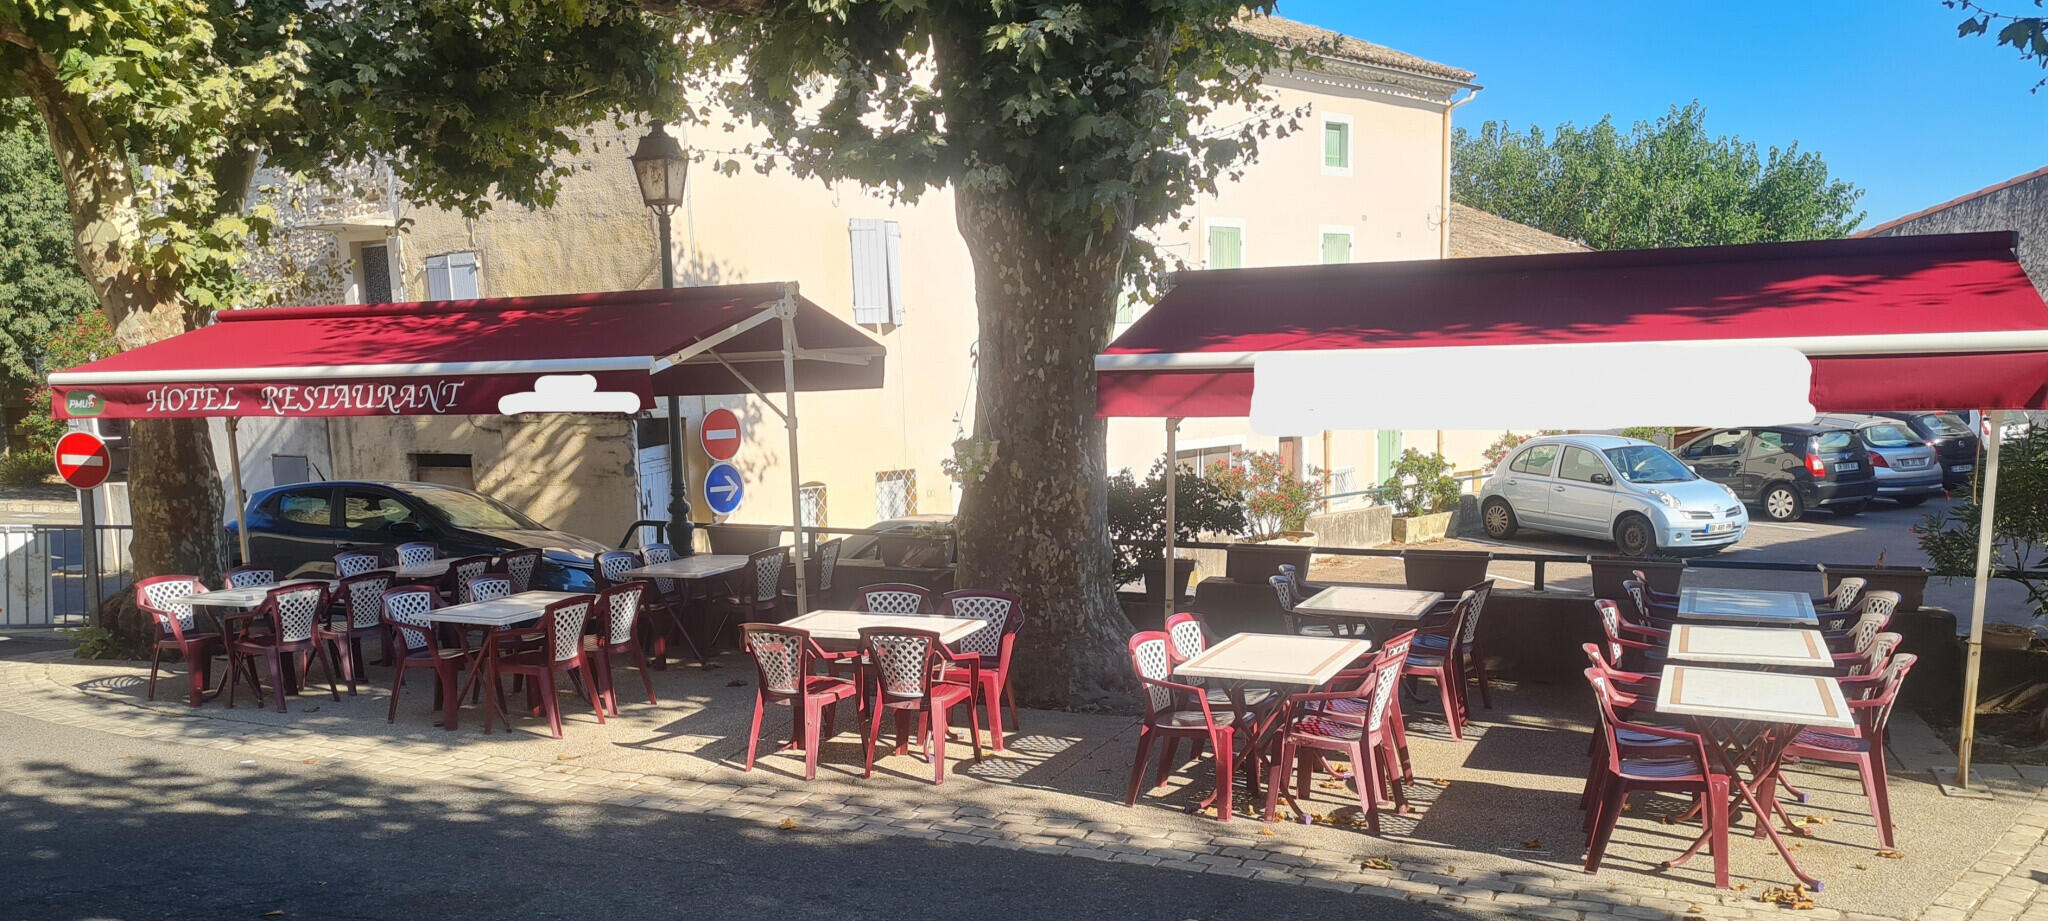 AV fonds + murs bar restaurant Ardèche Méridionale